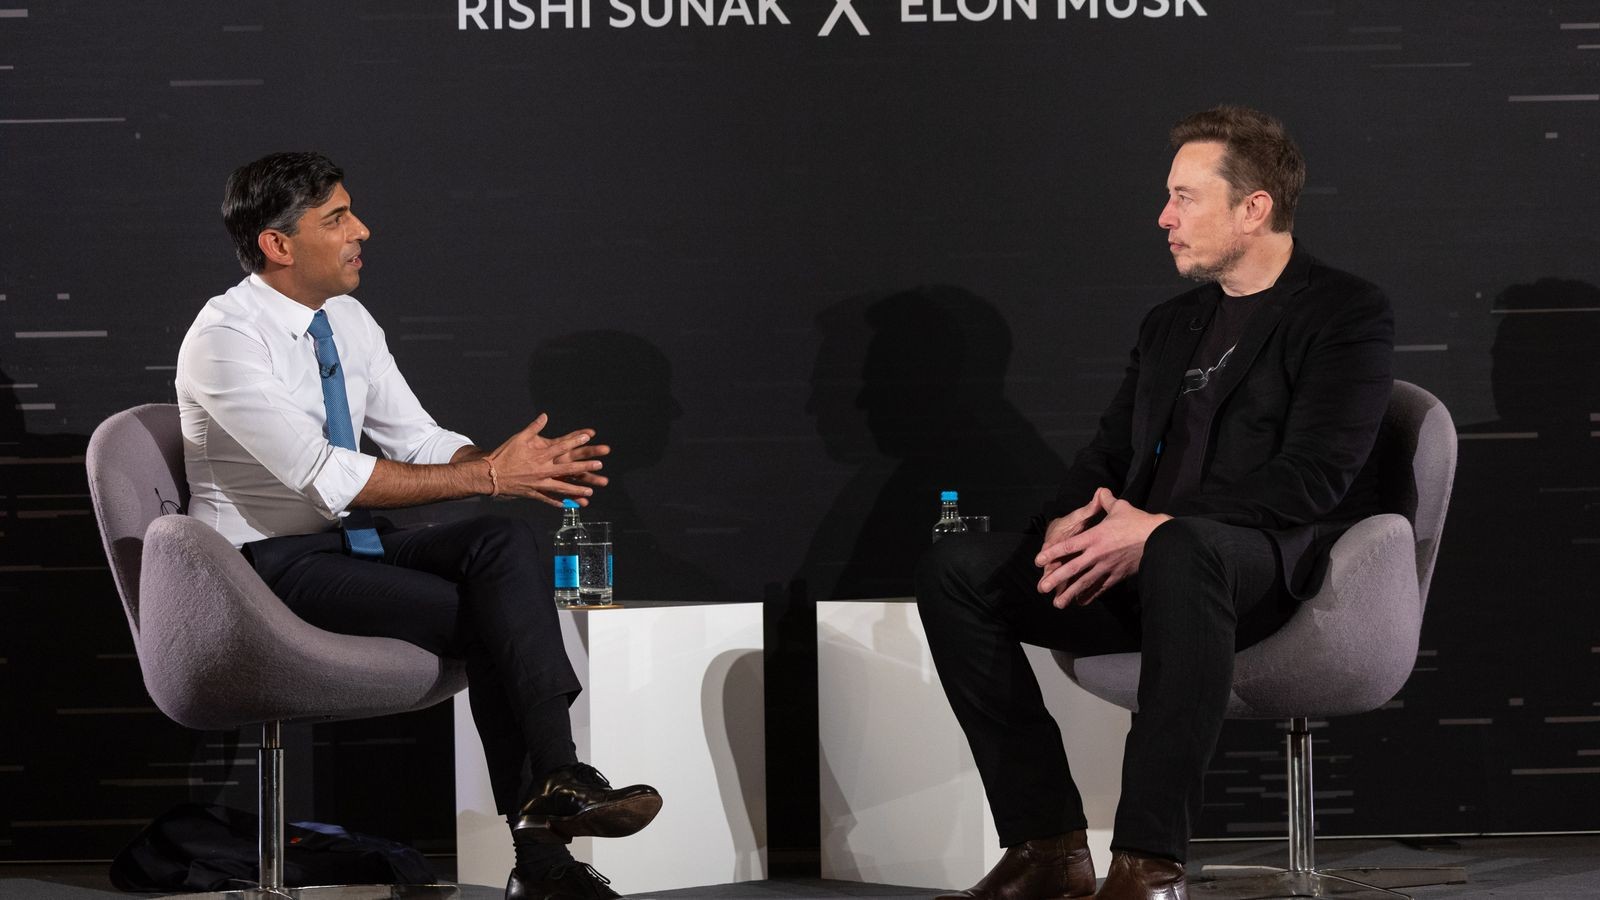 Elon Musk and Rishi Sunak 